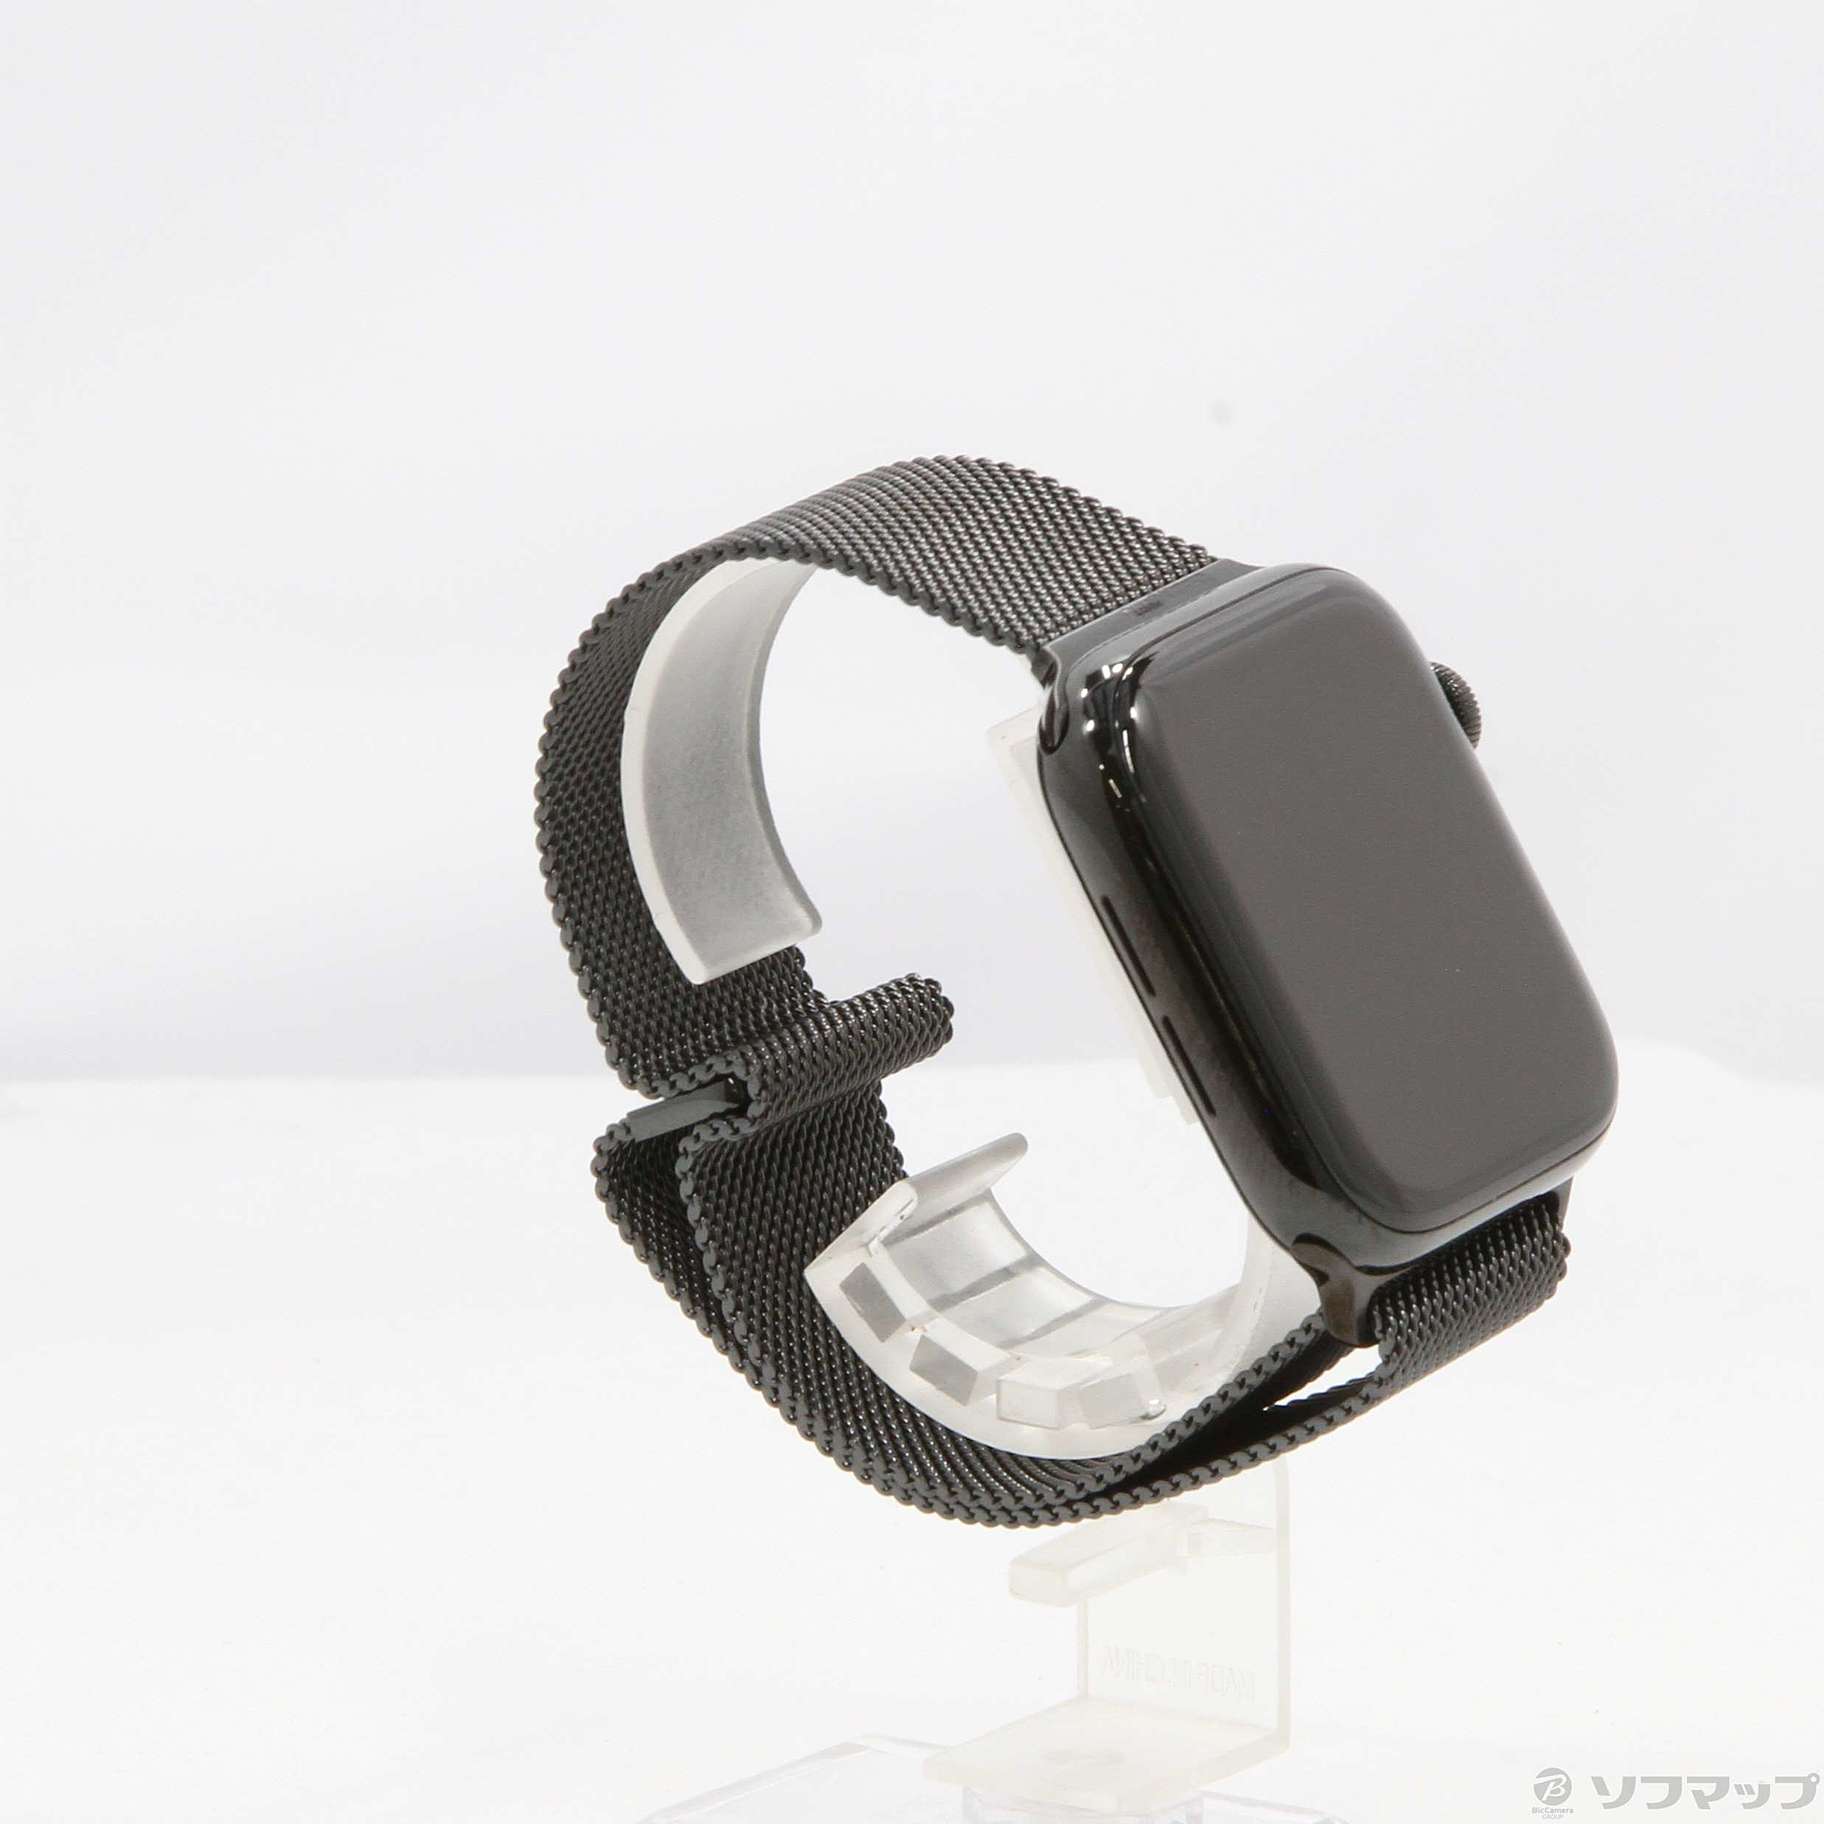 中古】〔展示品〕 Apple Watch Series 4 GPS + Cellular 44mm スペース ...